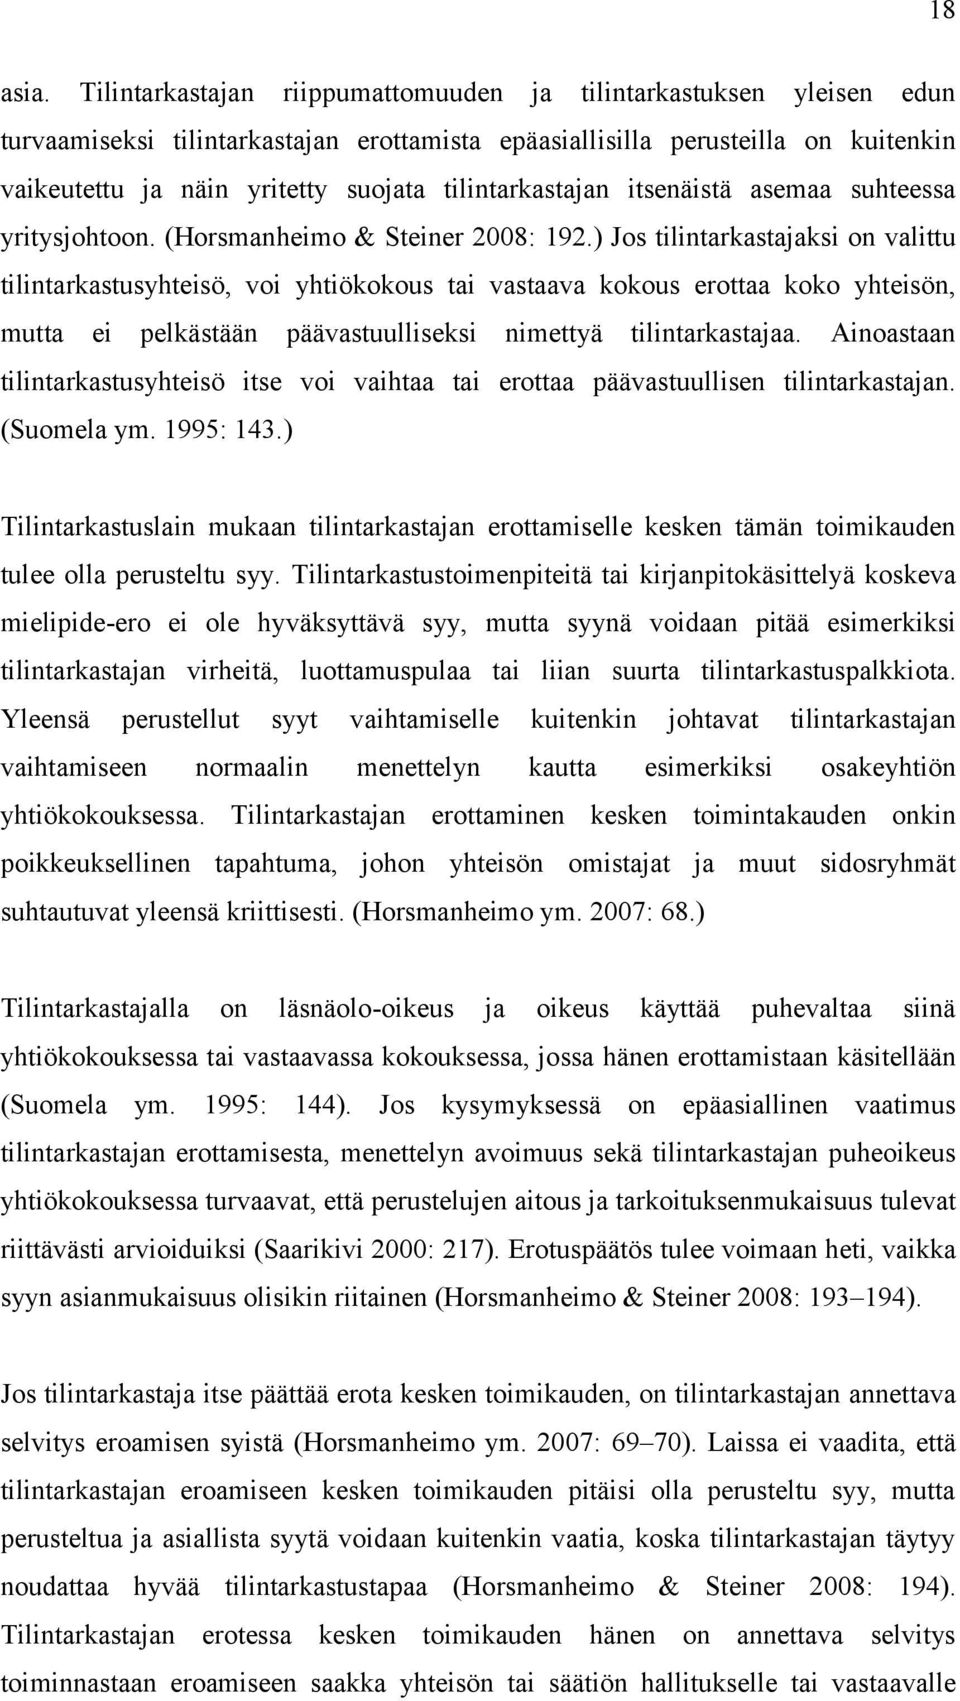 tilintarkastajan itsenäistä asemaa suhteessa yritysjohtoon. (Horsmanheimo & Steiner 2008: 192.